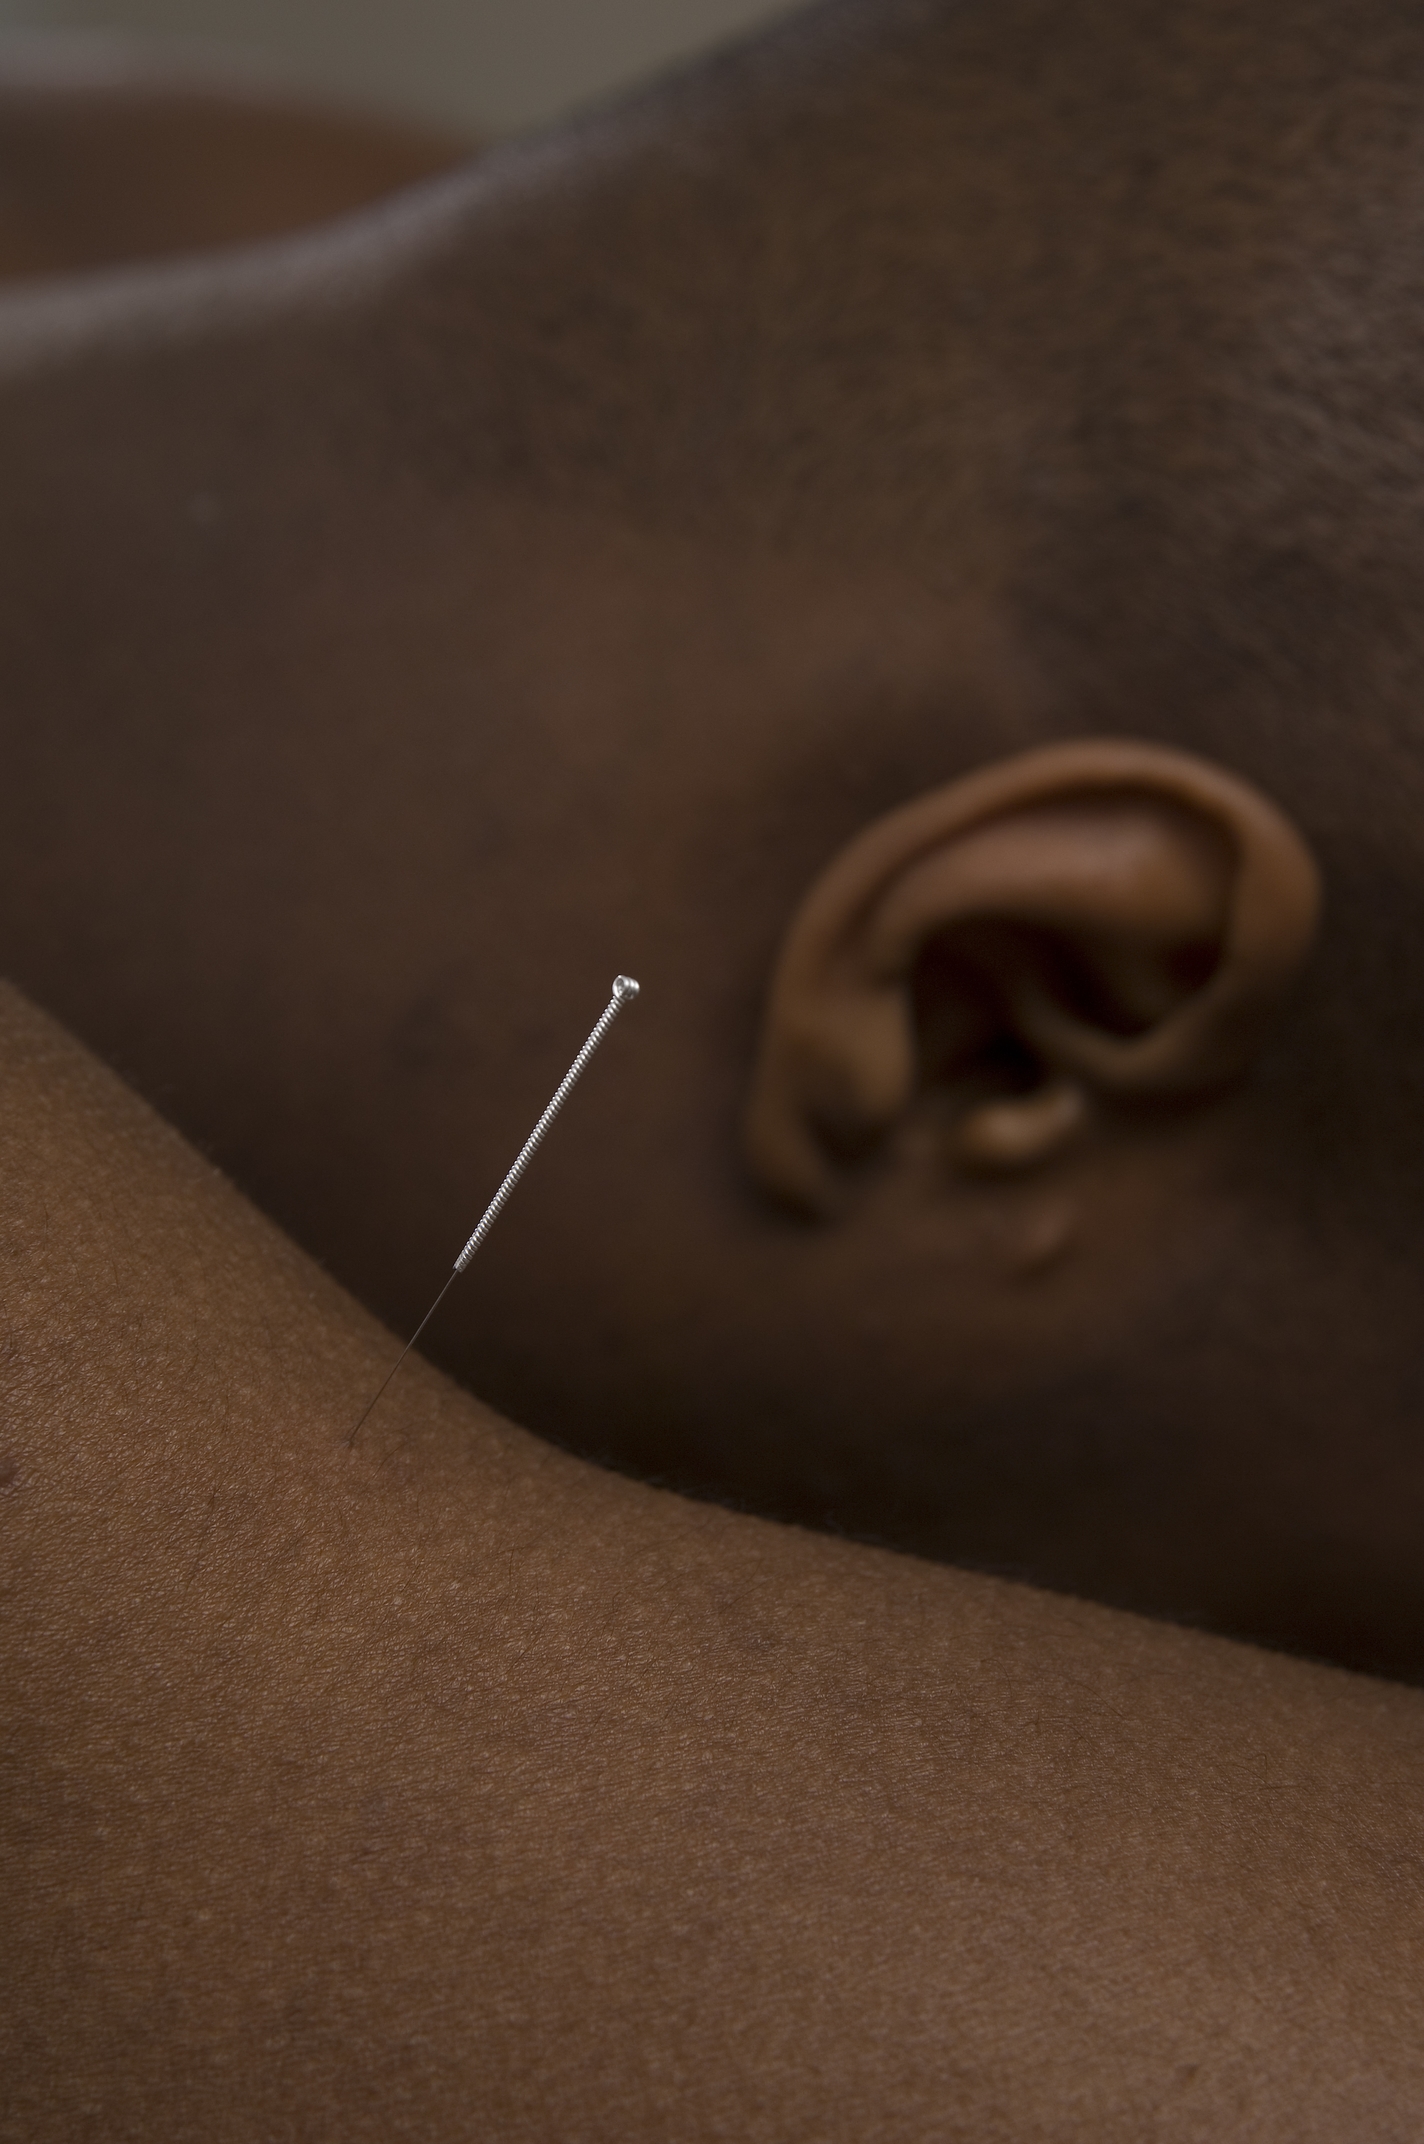 Acupuncture needle in situ